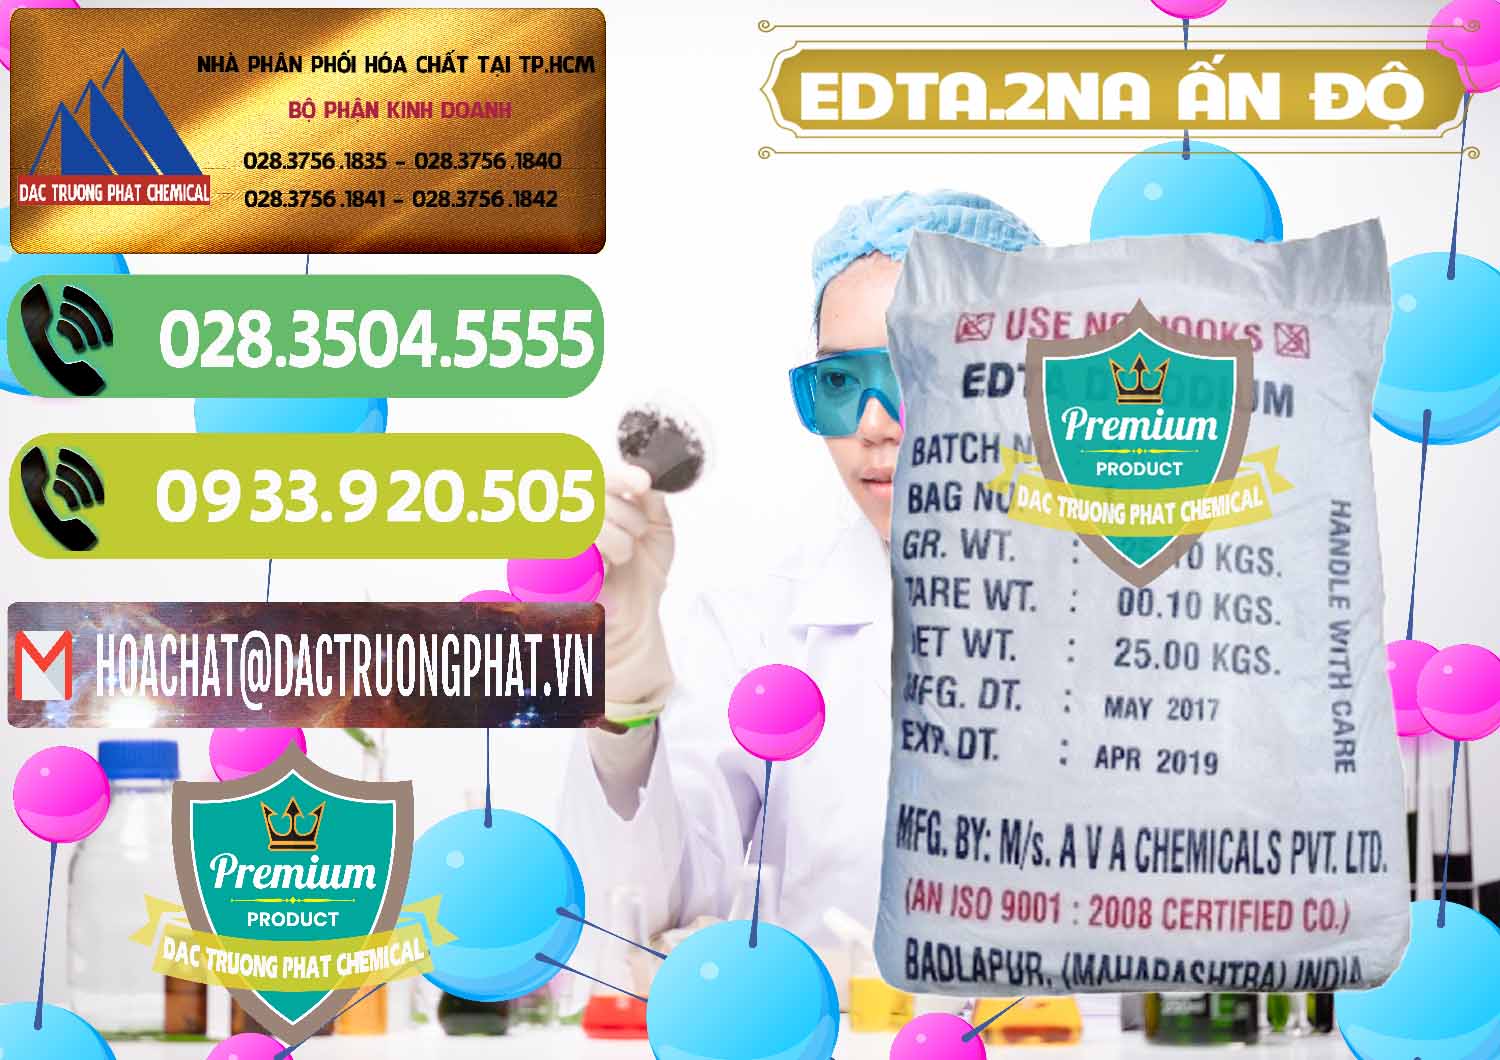 Nơi chuyên kinh doanh & bán EDTA.2NA - Ethylendiamin Tetraacetic Ấn Độ India - 0416 - Đơn vị chuyên cung cấp & bán hóa chất tại TP.HCM - hoachatmientay.vn